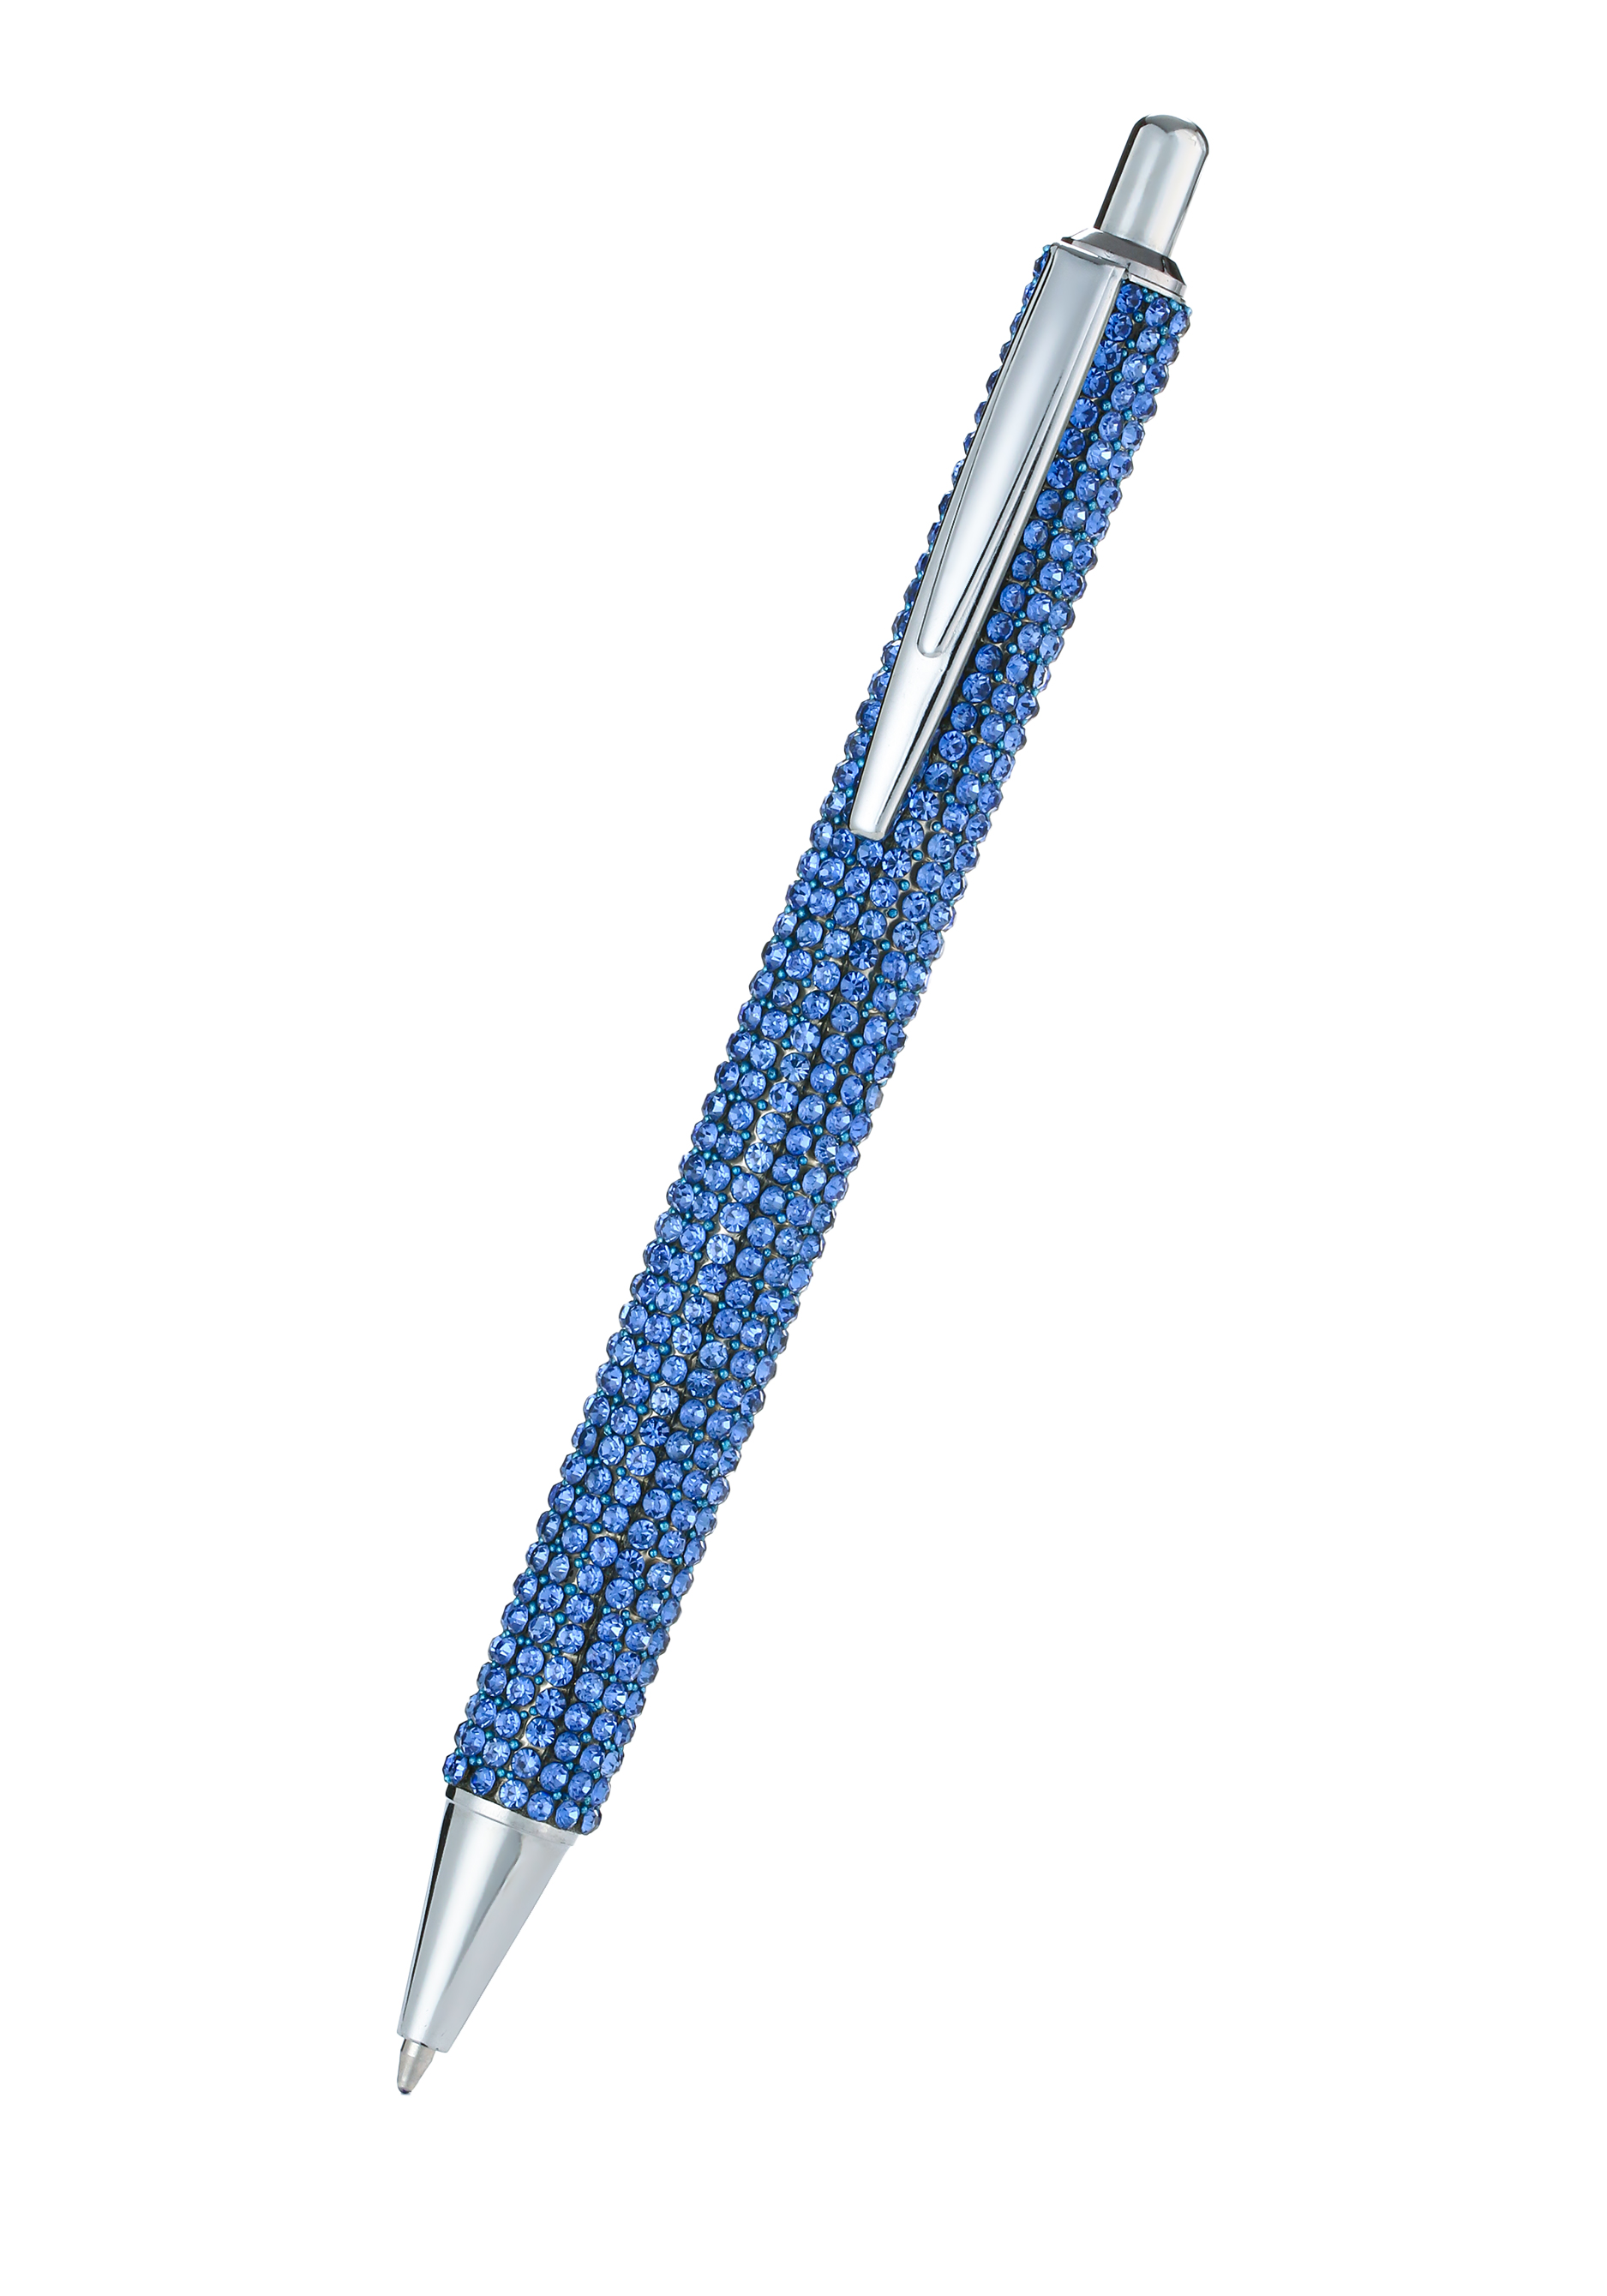 Ручка с кристаллами тяпка посадочная длина 28 см деревянная ручка с поролоном